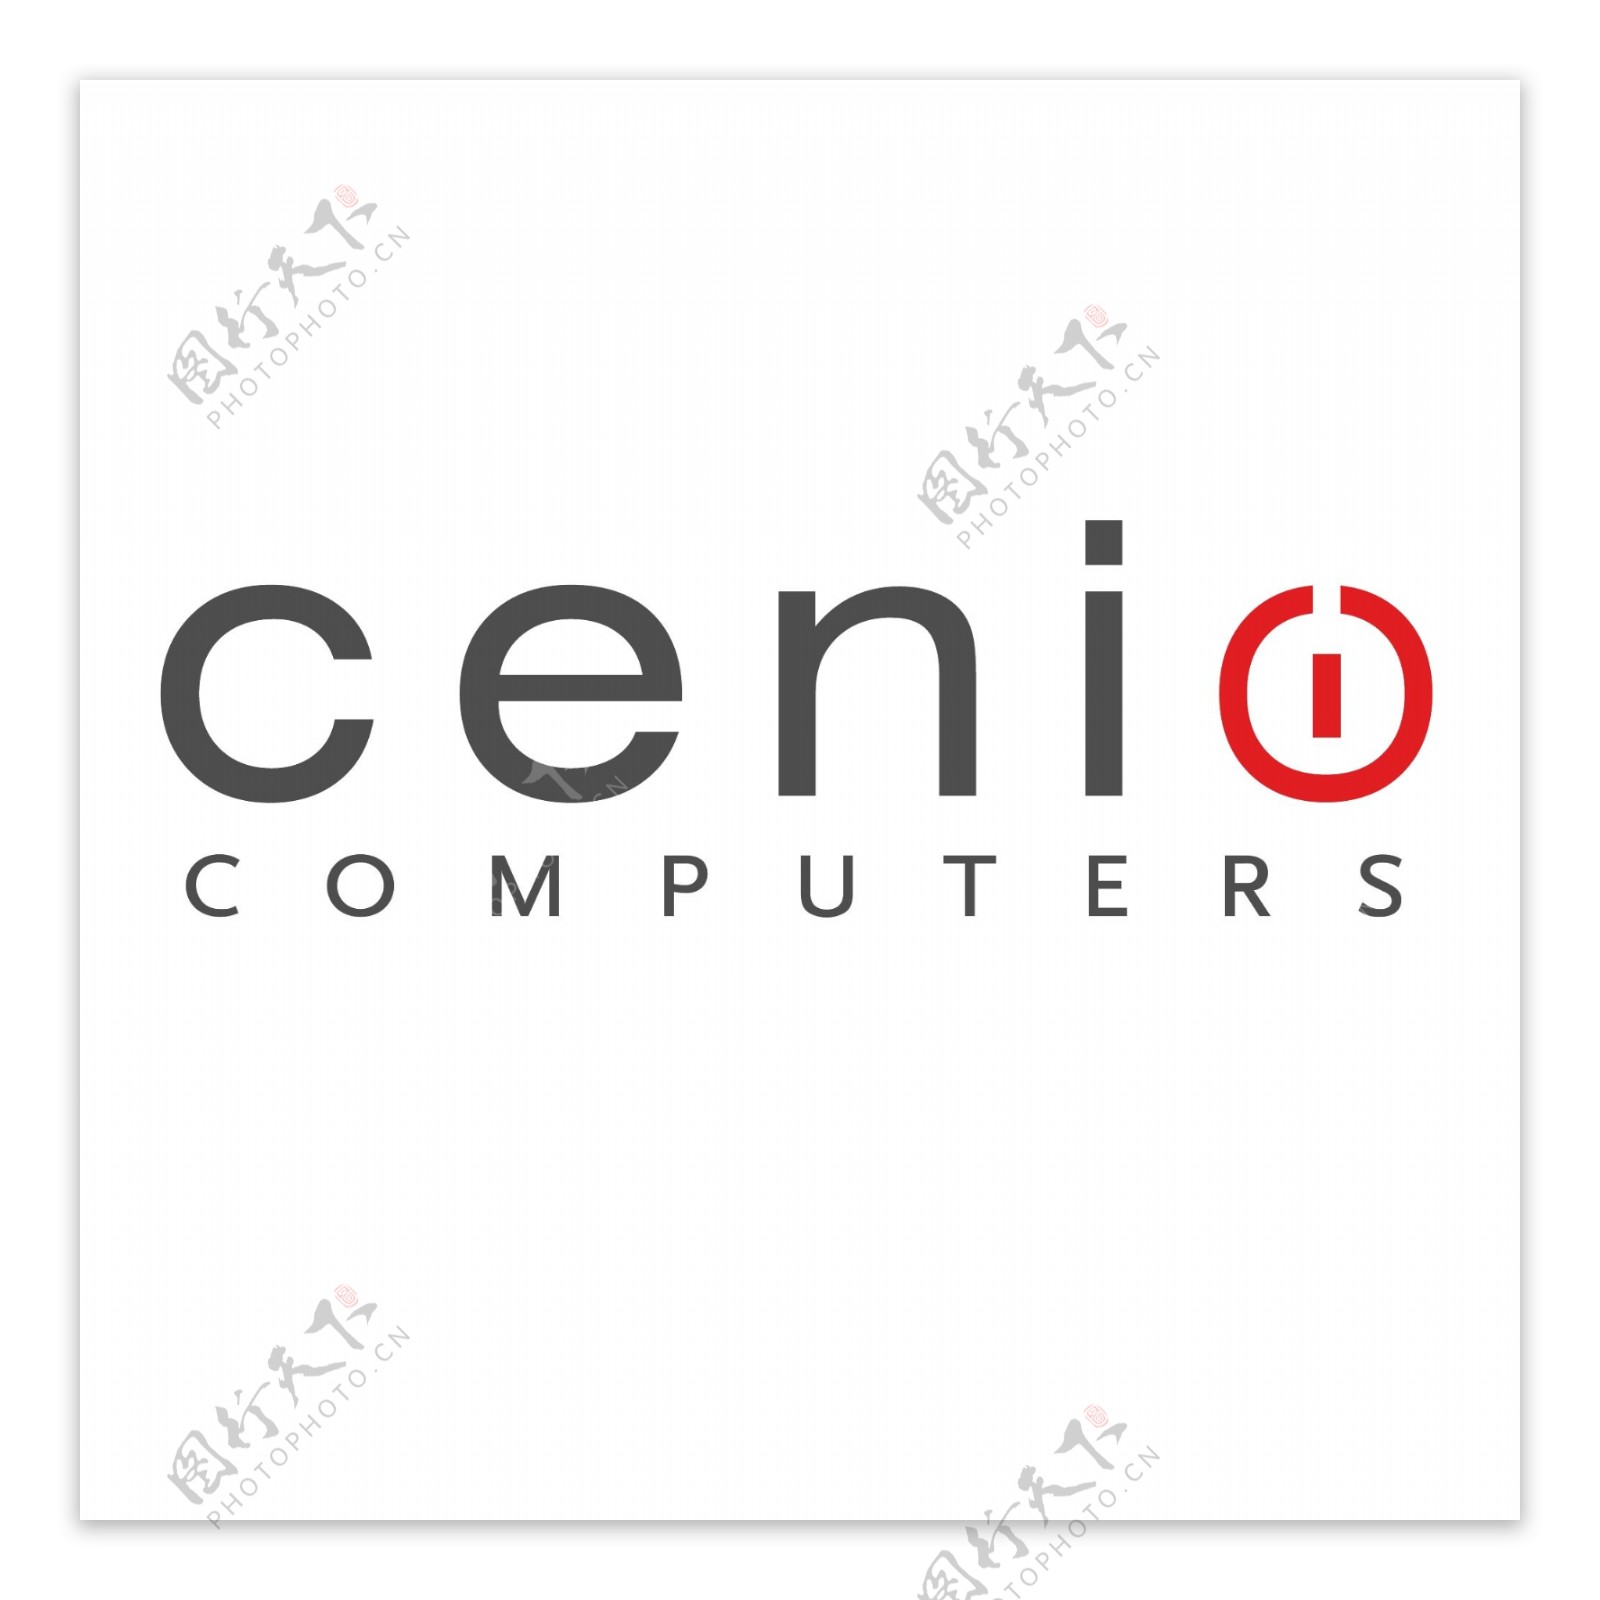 Cenio5logo设计欣赏Cenio5电脑软件标志下载标志设计欣赏